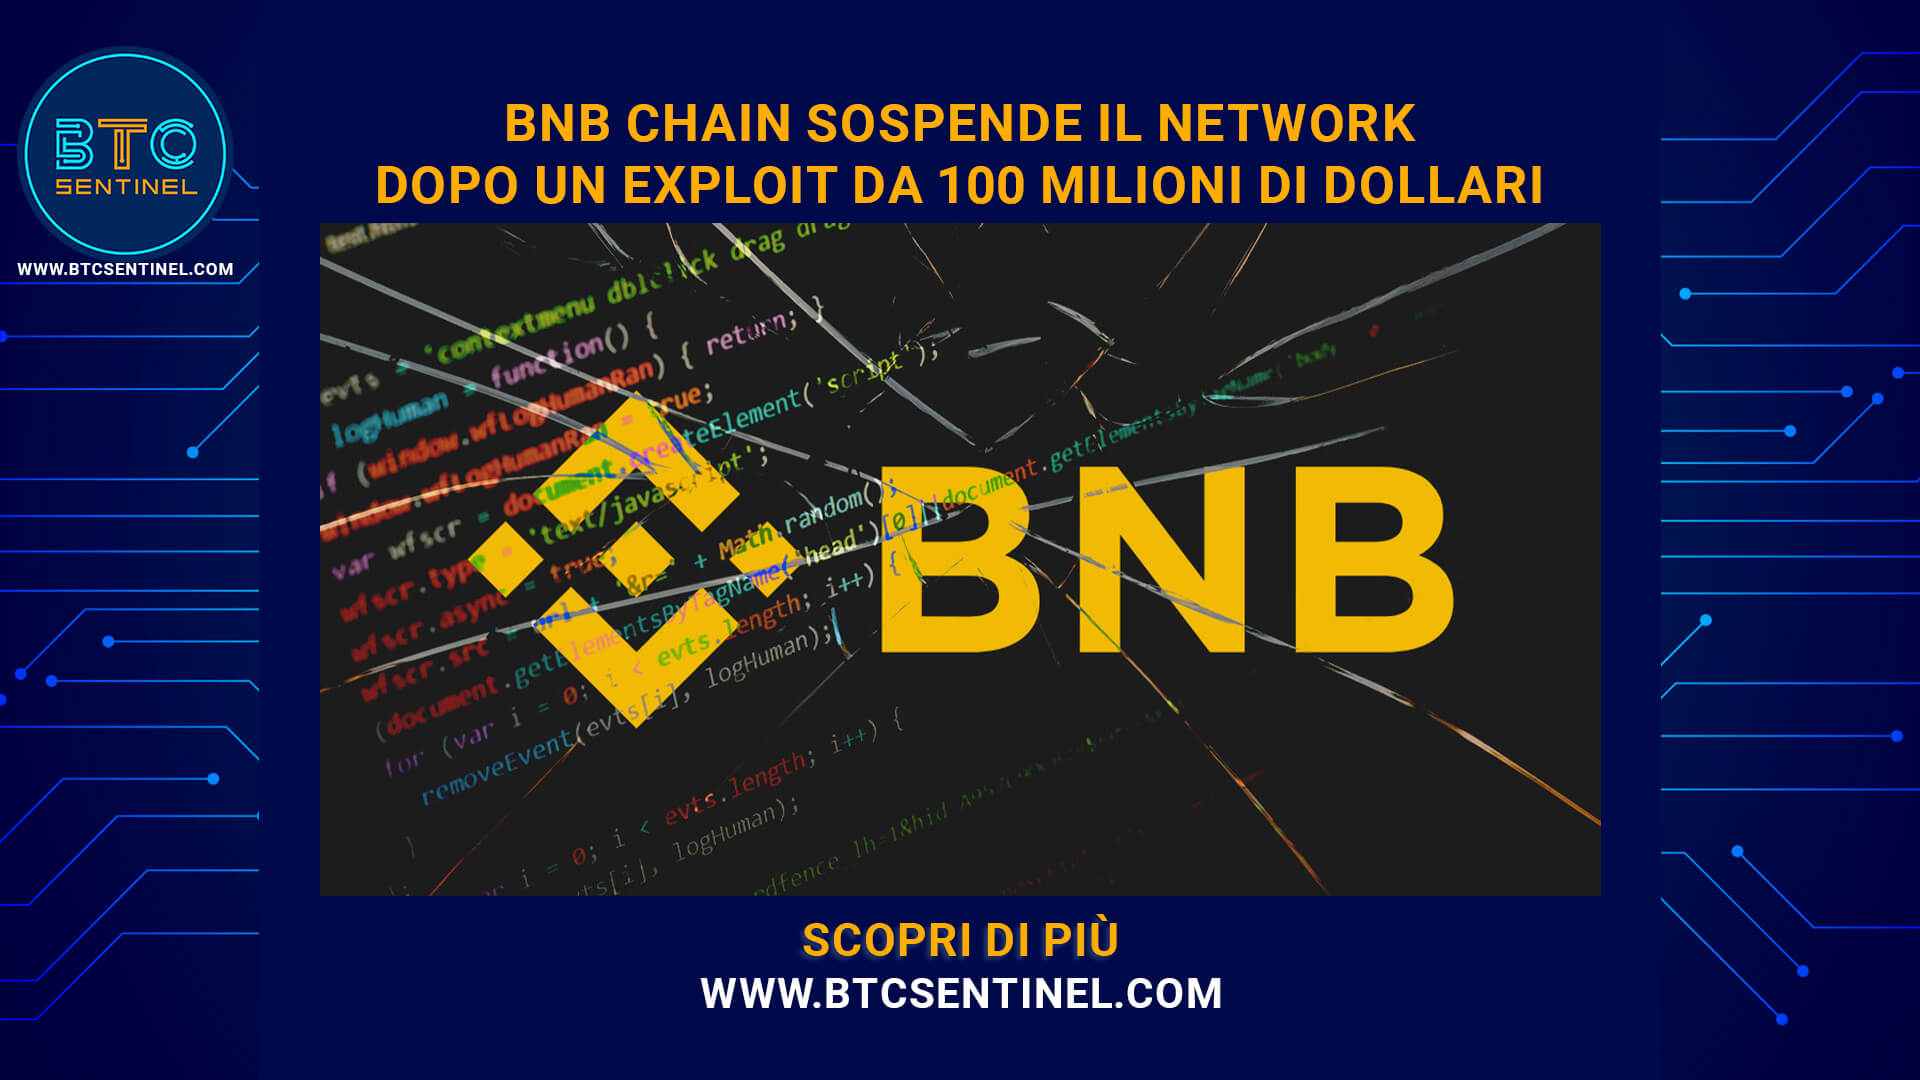 BNB Chain sospende il network dopo un exploit da 100 milioni di dollari